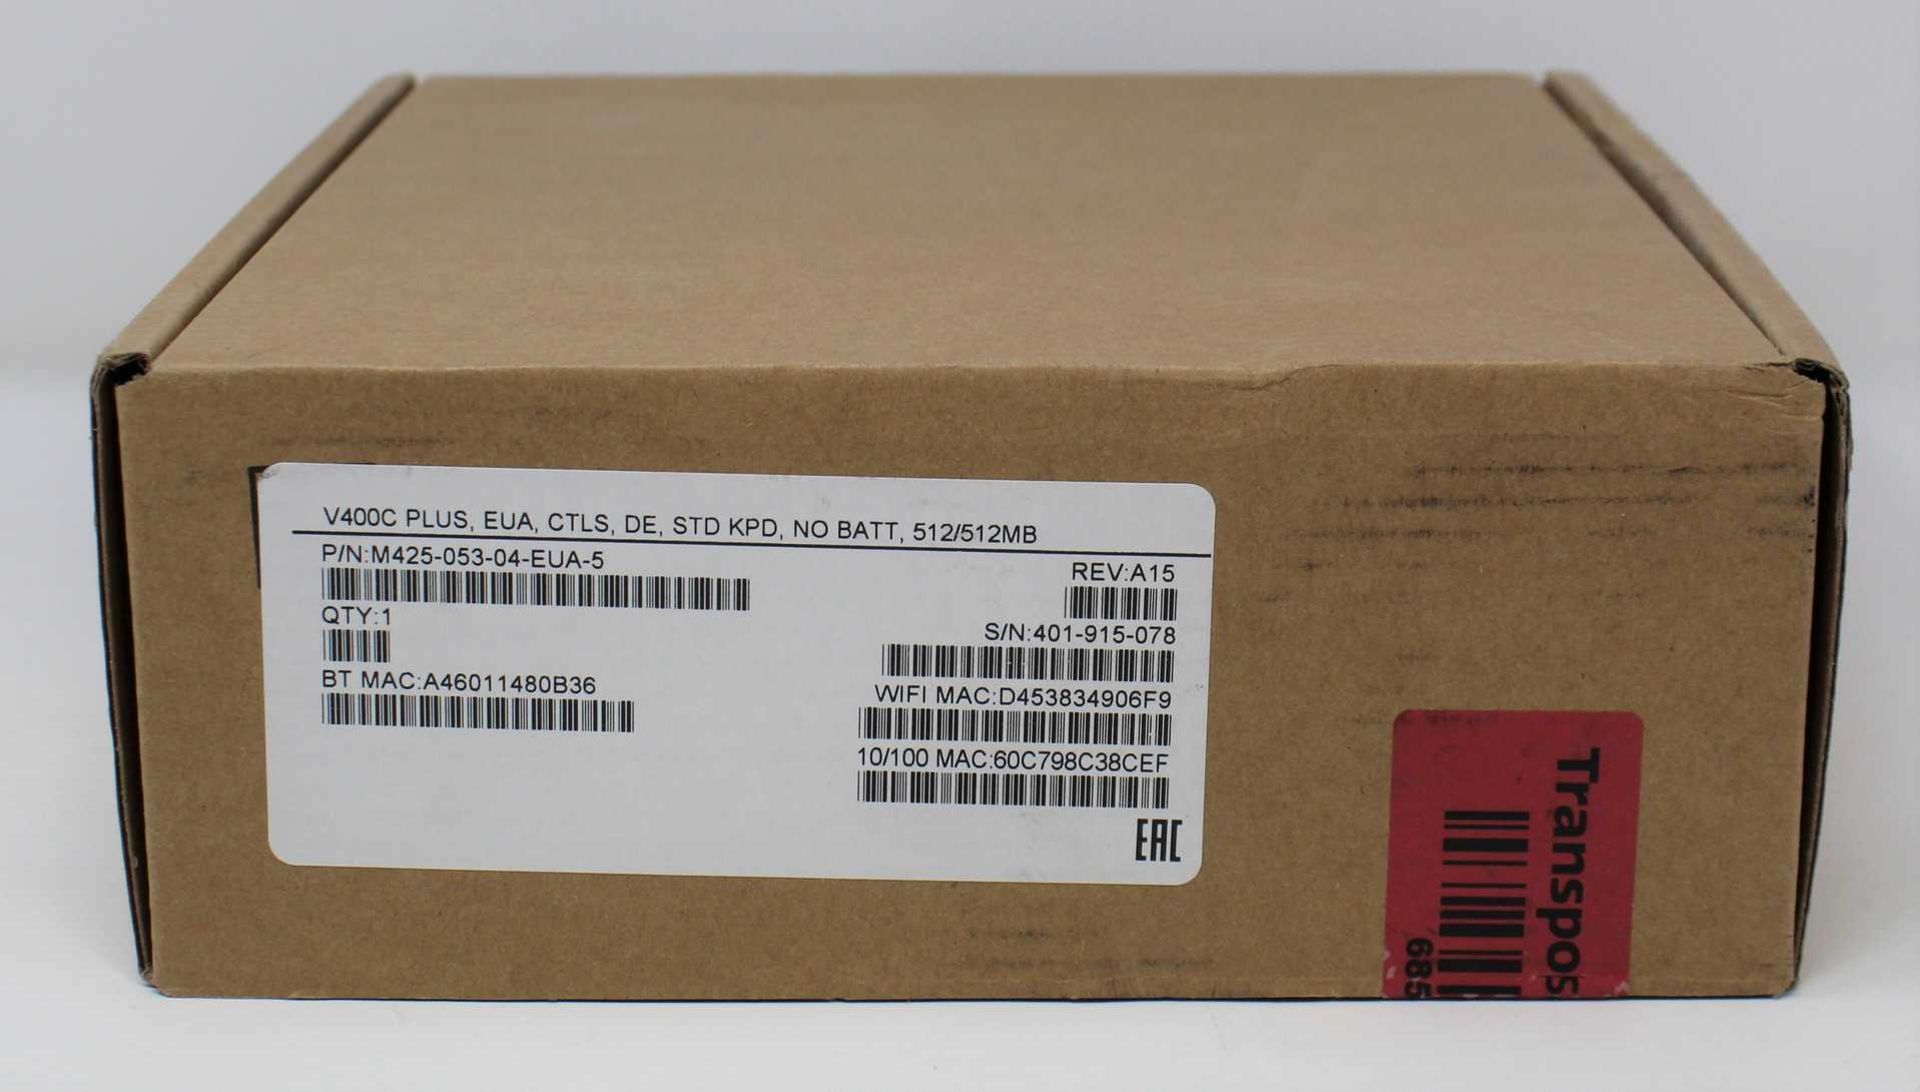 A boxed as new Verifone V400C Plus Touchscreen Payment Terminal (VC400C PLUS, EUA, CTLS, DE, STD